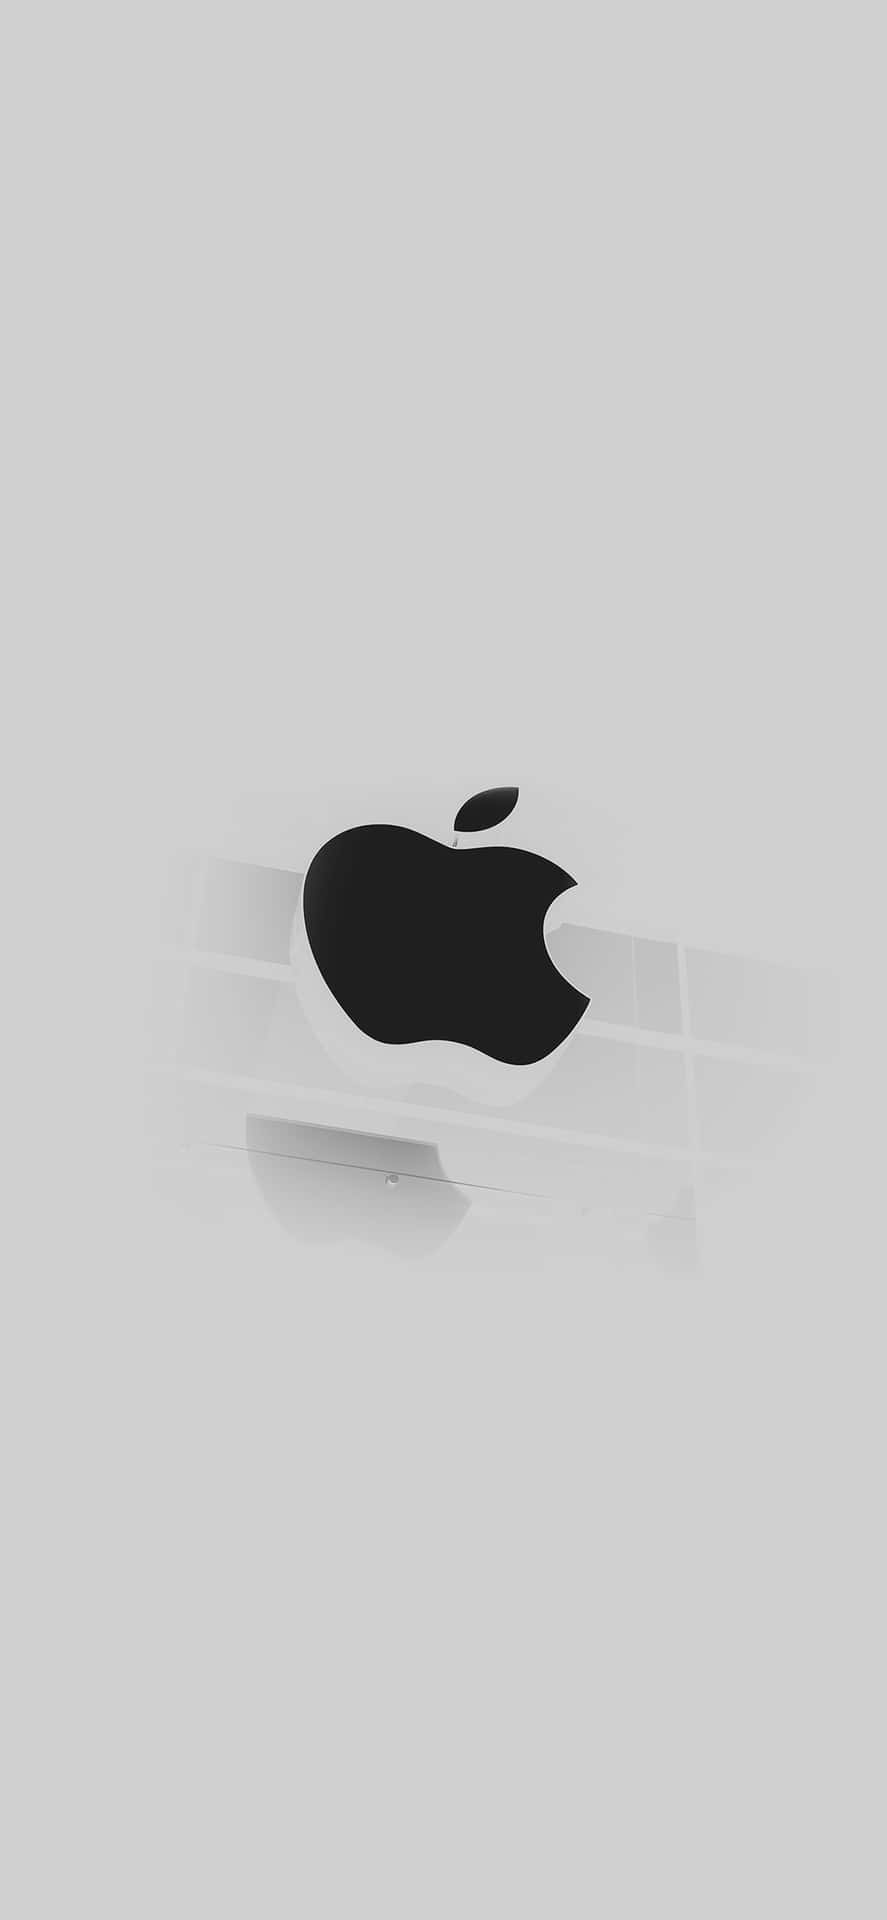 Abstraktesiphone X Apple-logo Wallpaper